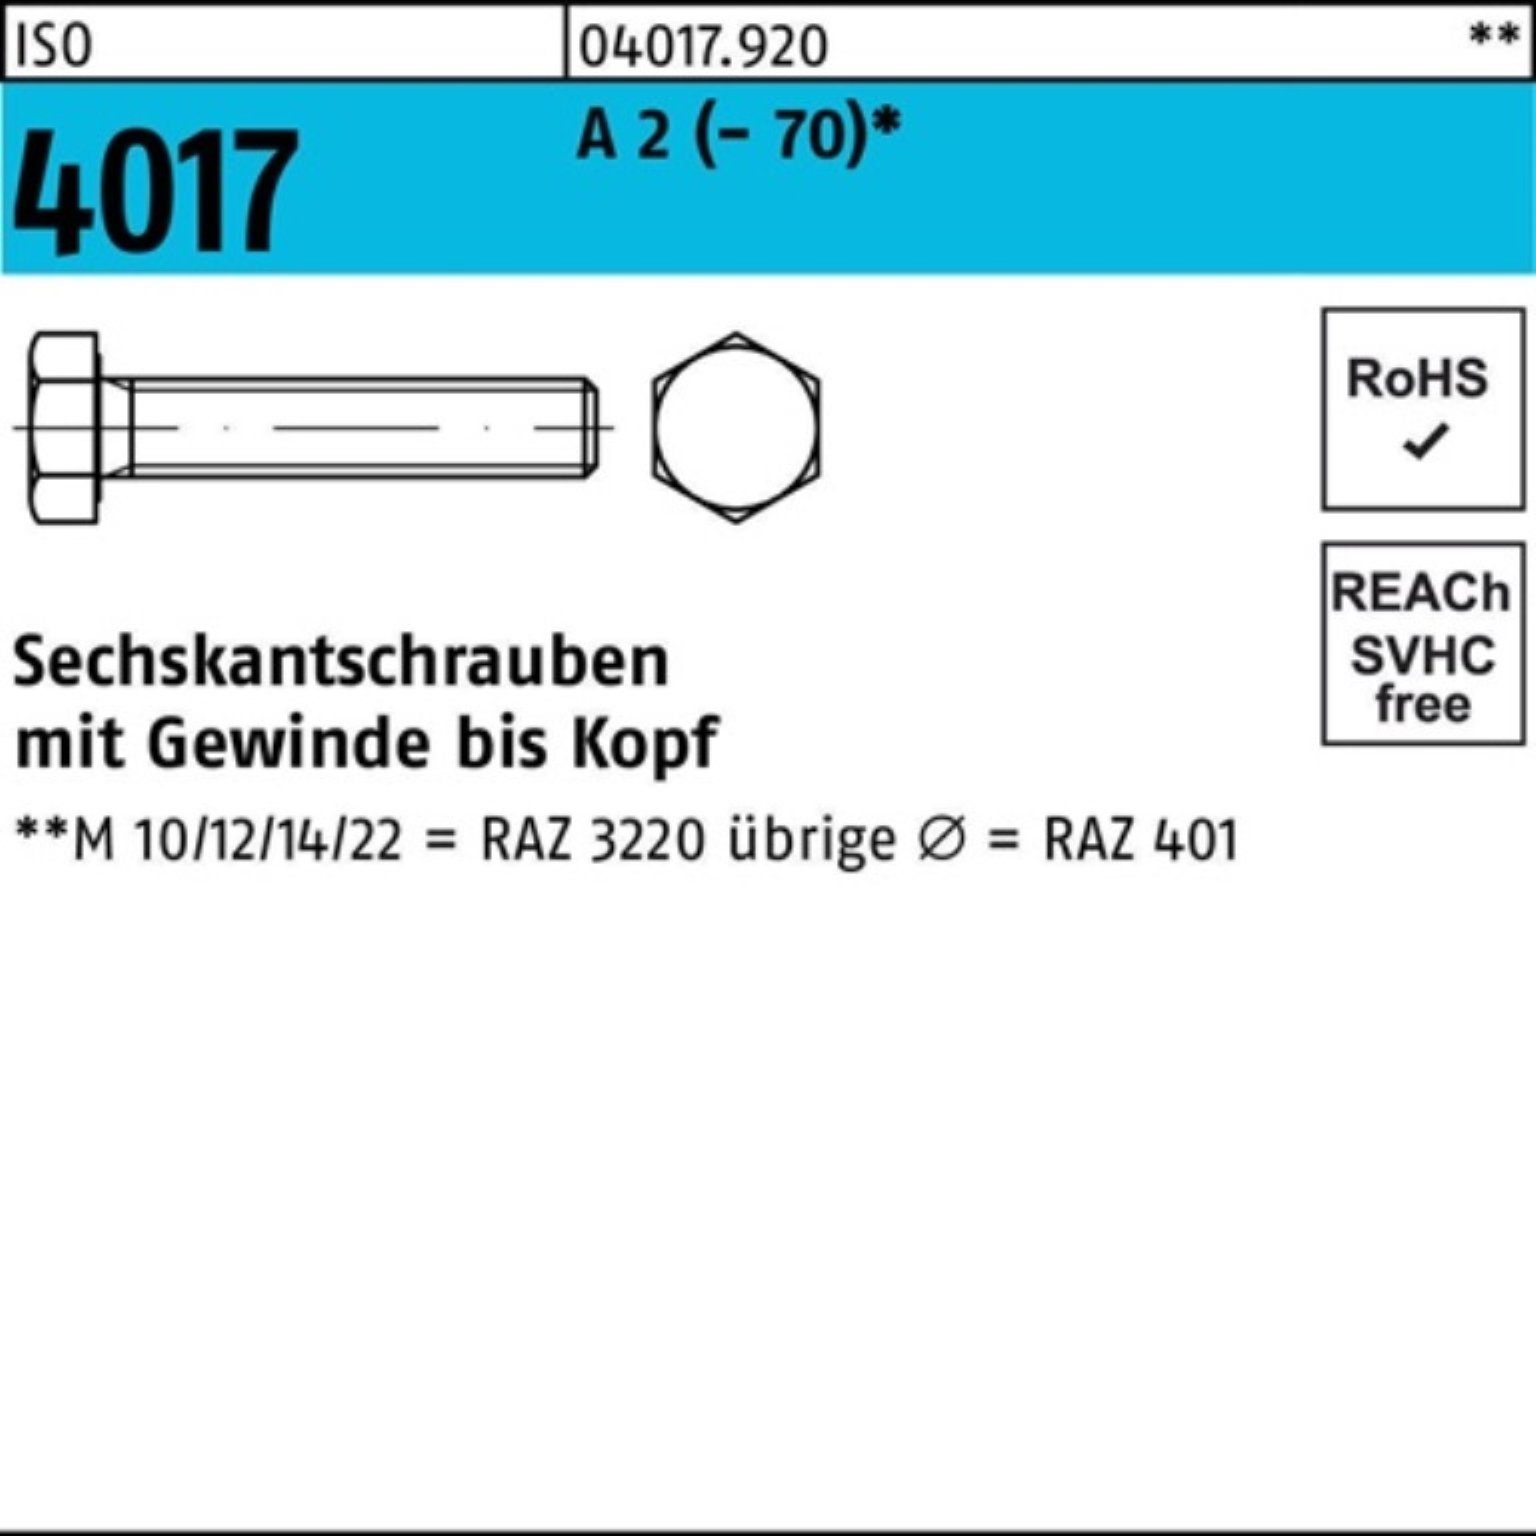 Pack Sechskantschraube 12 4017 Stück ISO M10x 100er 100 Sechskantschraube VG 2 (70) A Bufab